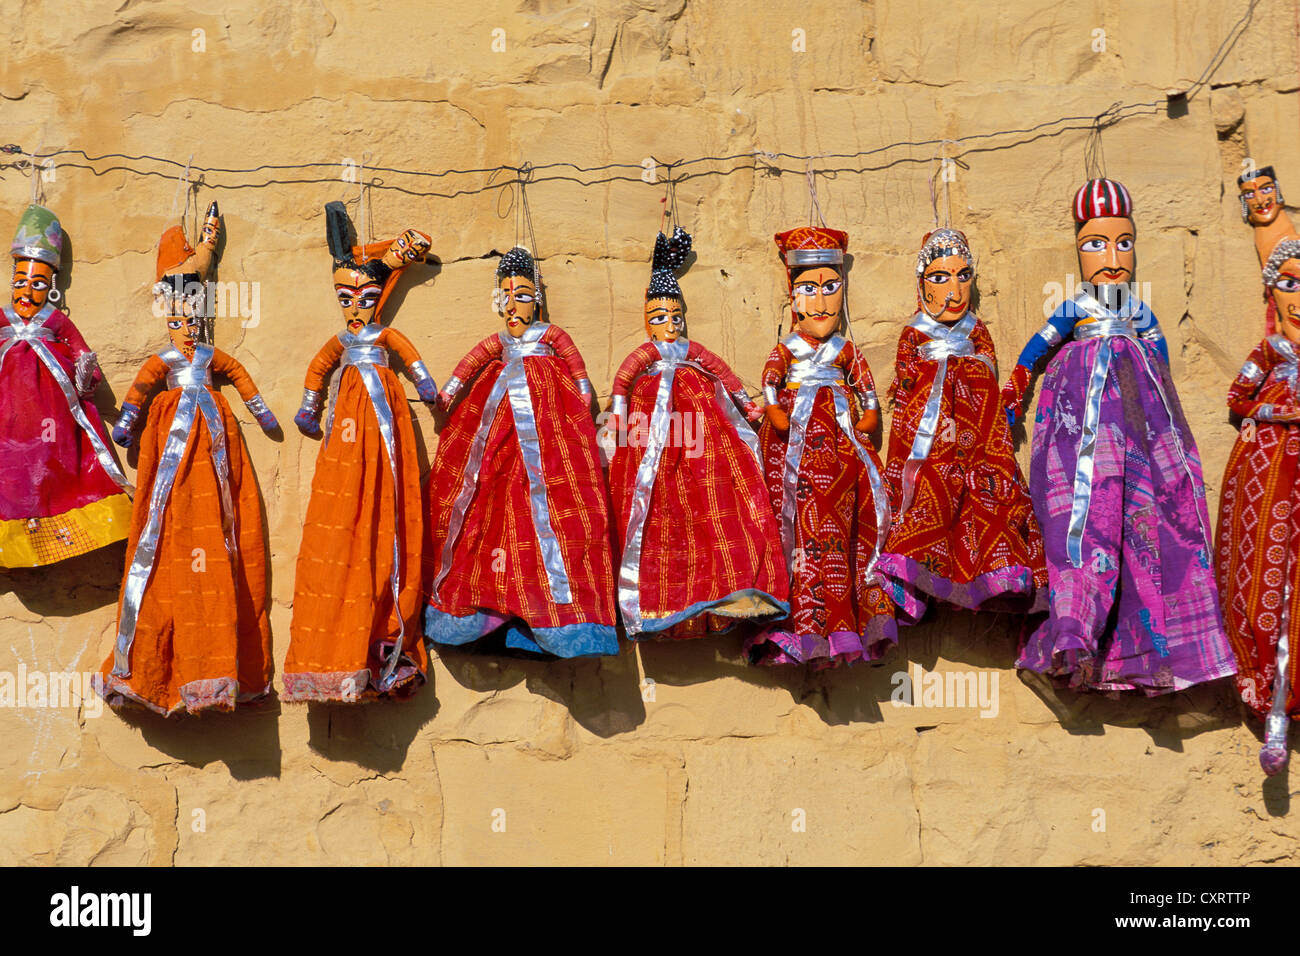 Poupées traditionnelles du nord du Rajasthan suspendue sur le fil en face d'un mur de couleur miel, Jaisalmer, Rajasthan, Inde, Asie Banque D'Images